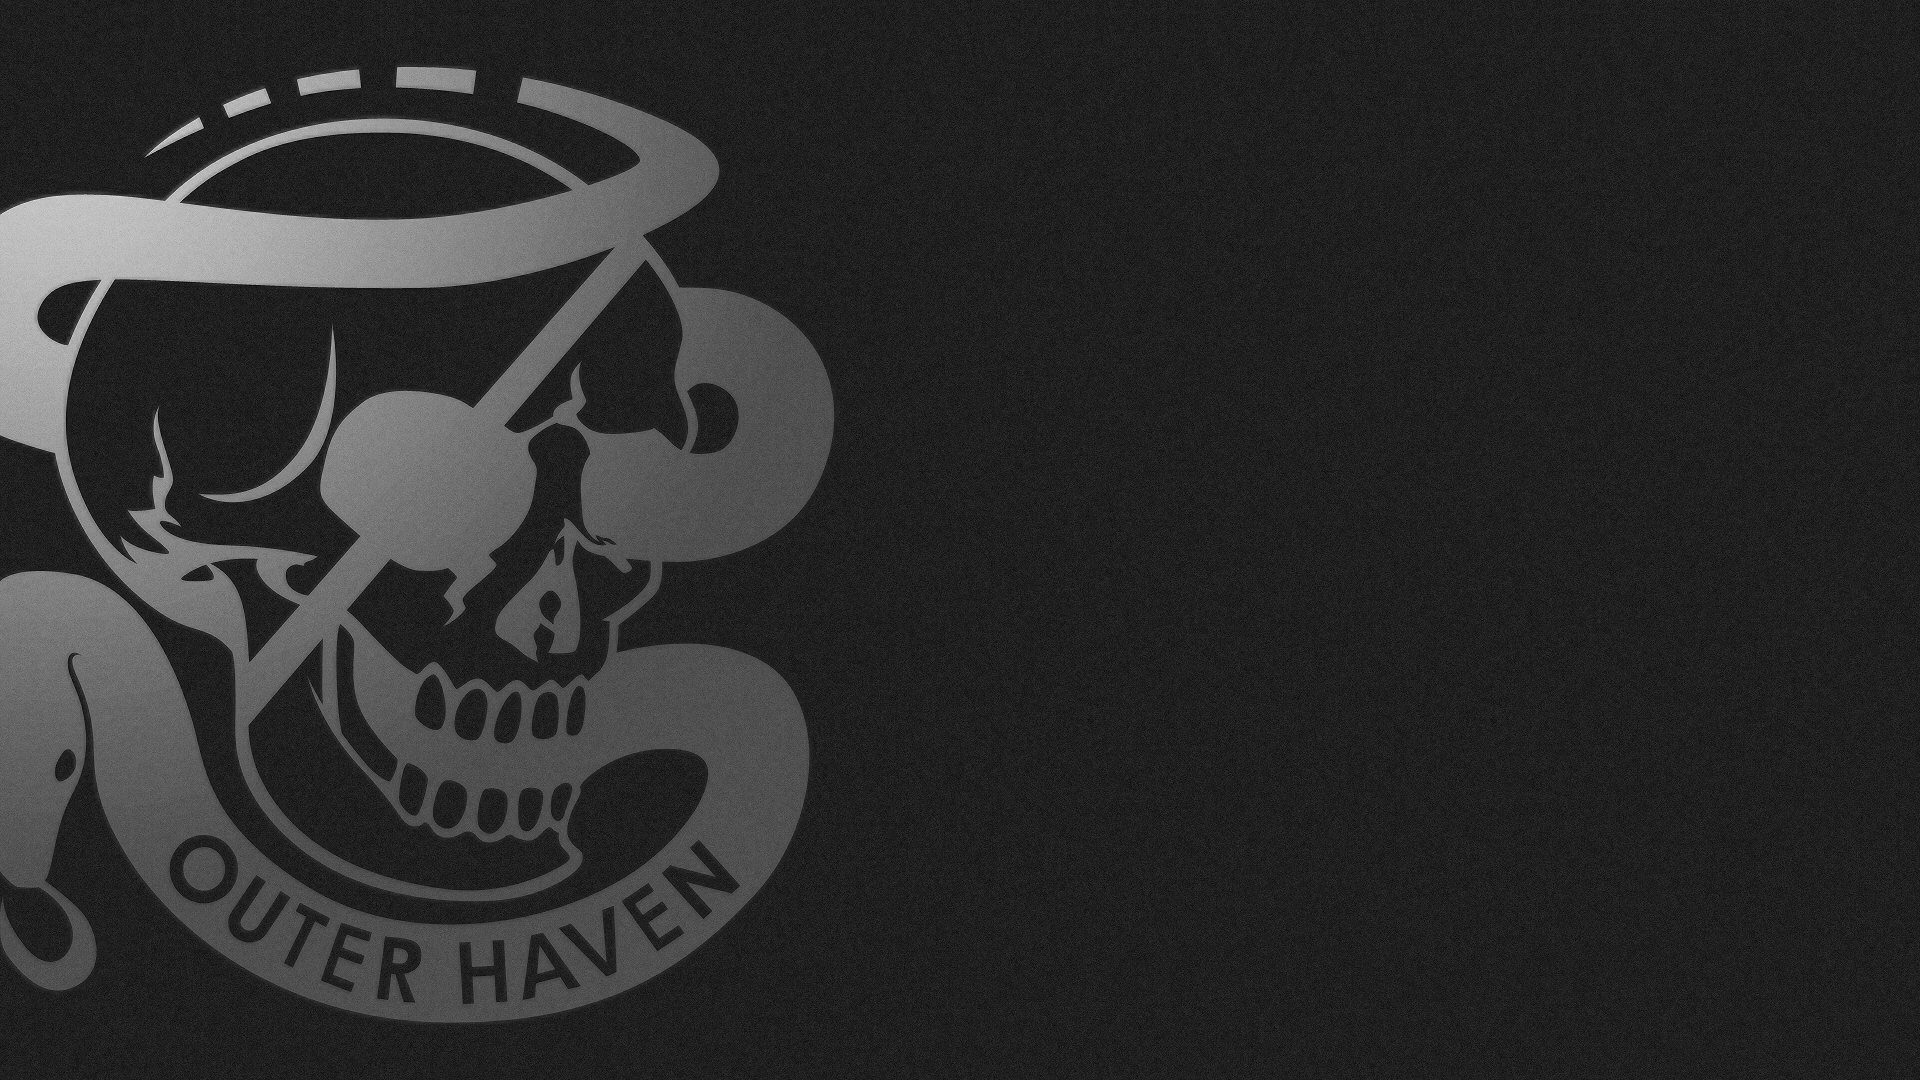 Metal Gear, skulls, logos - desktop wallpaper